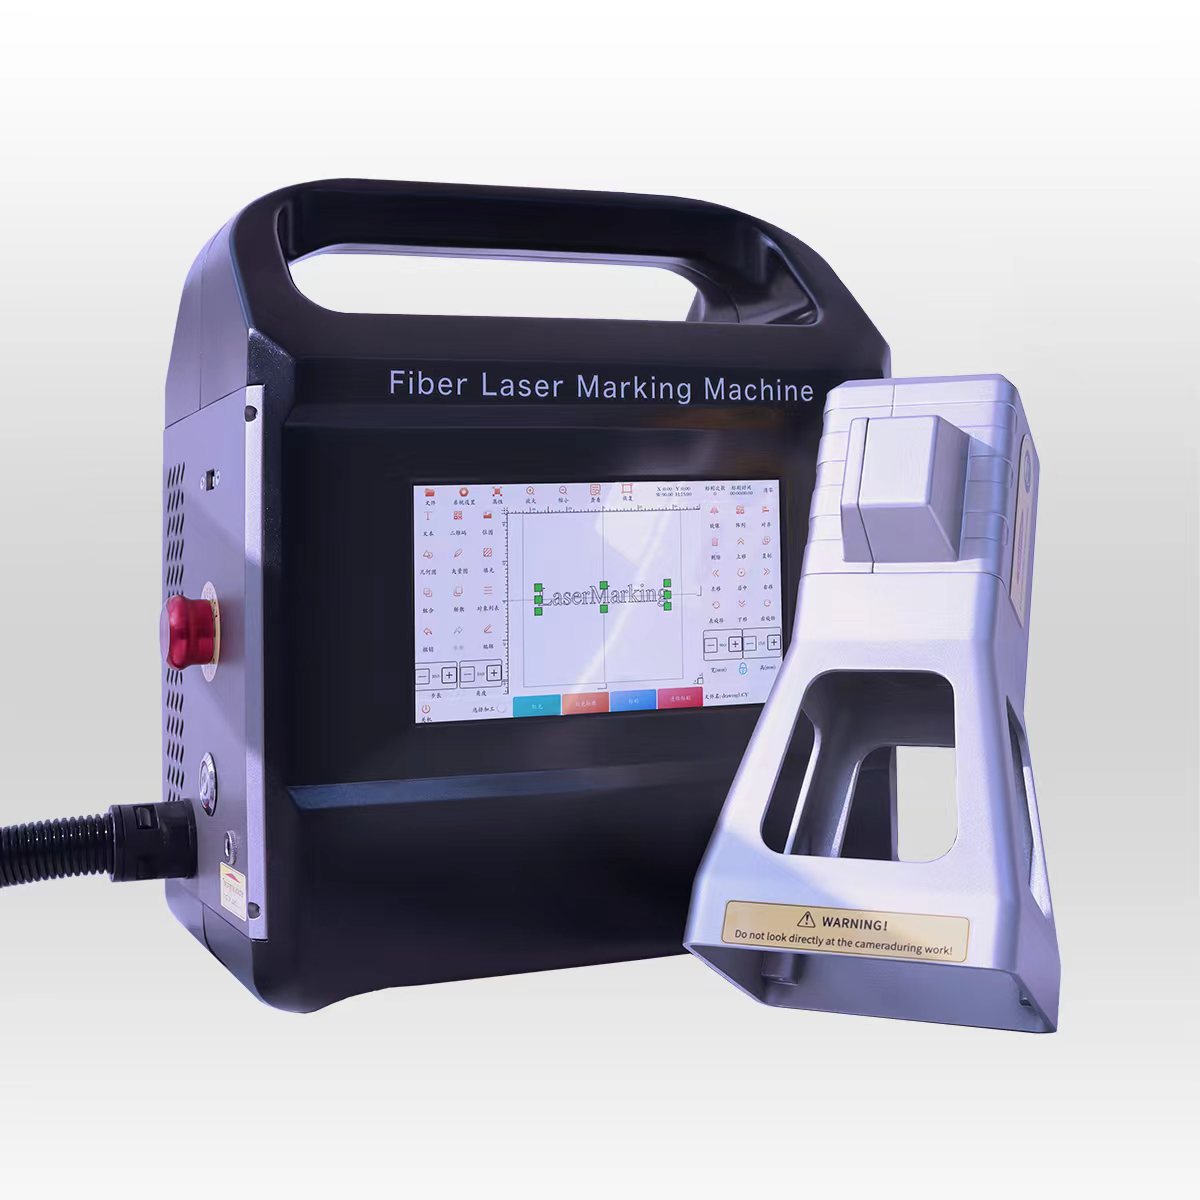 Aplicación de la nueva máquina de marcado láser de fibra y comparación con otras máquinas de marcado.